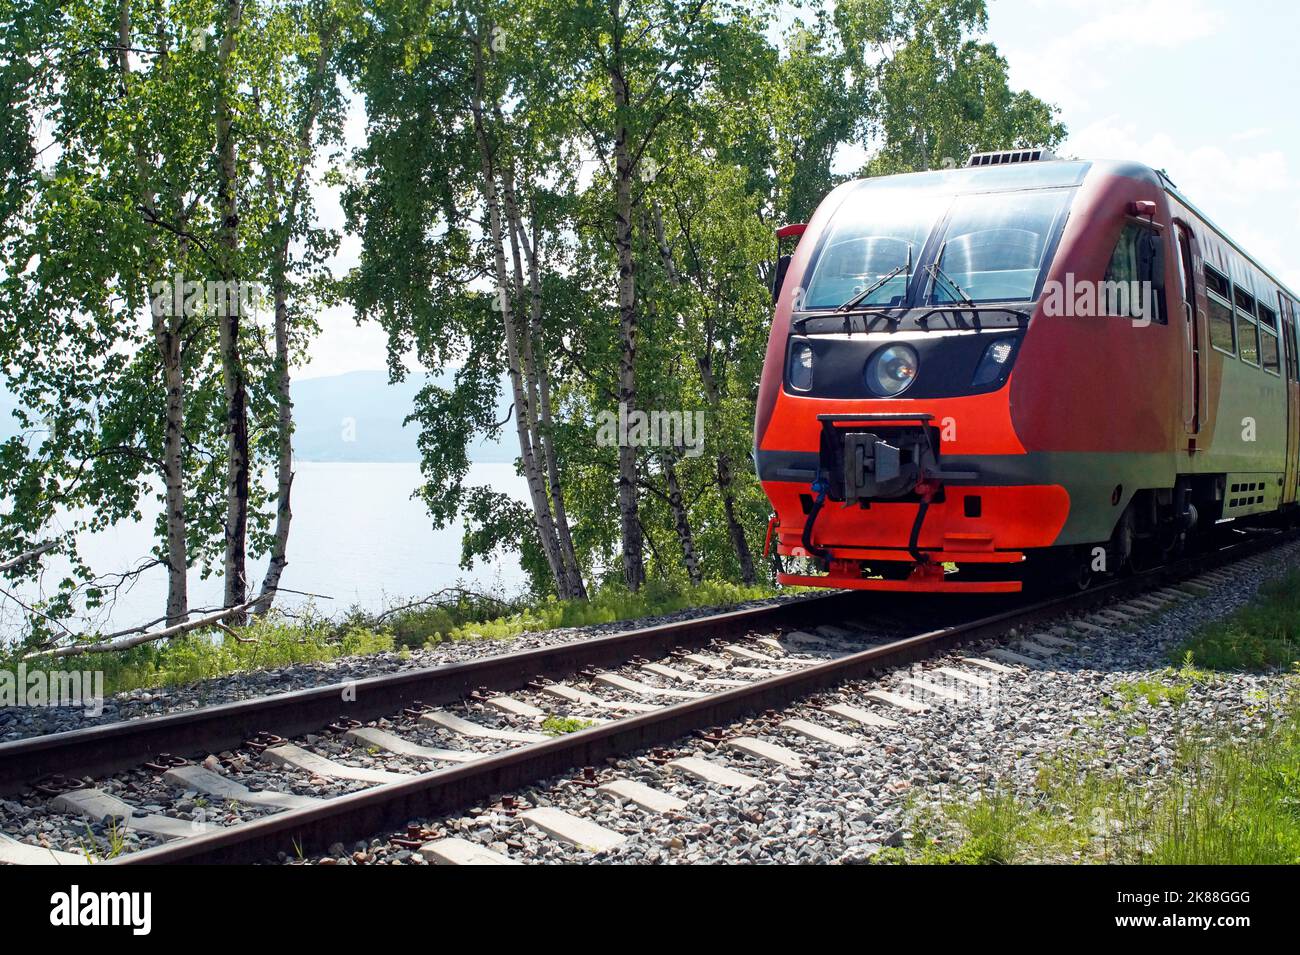 Train de voyageurs rouge-gris, voies de chemin de fer Banque D'Images